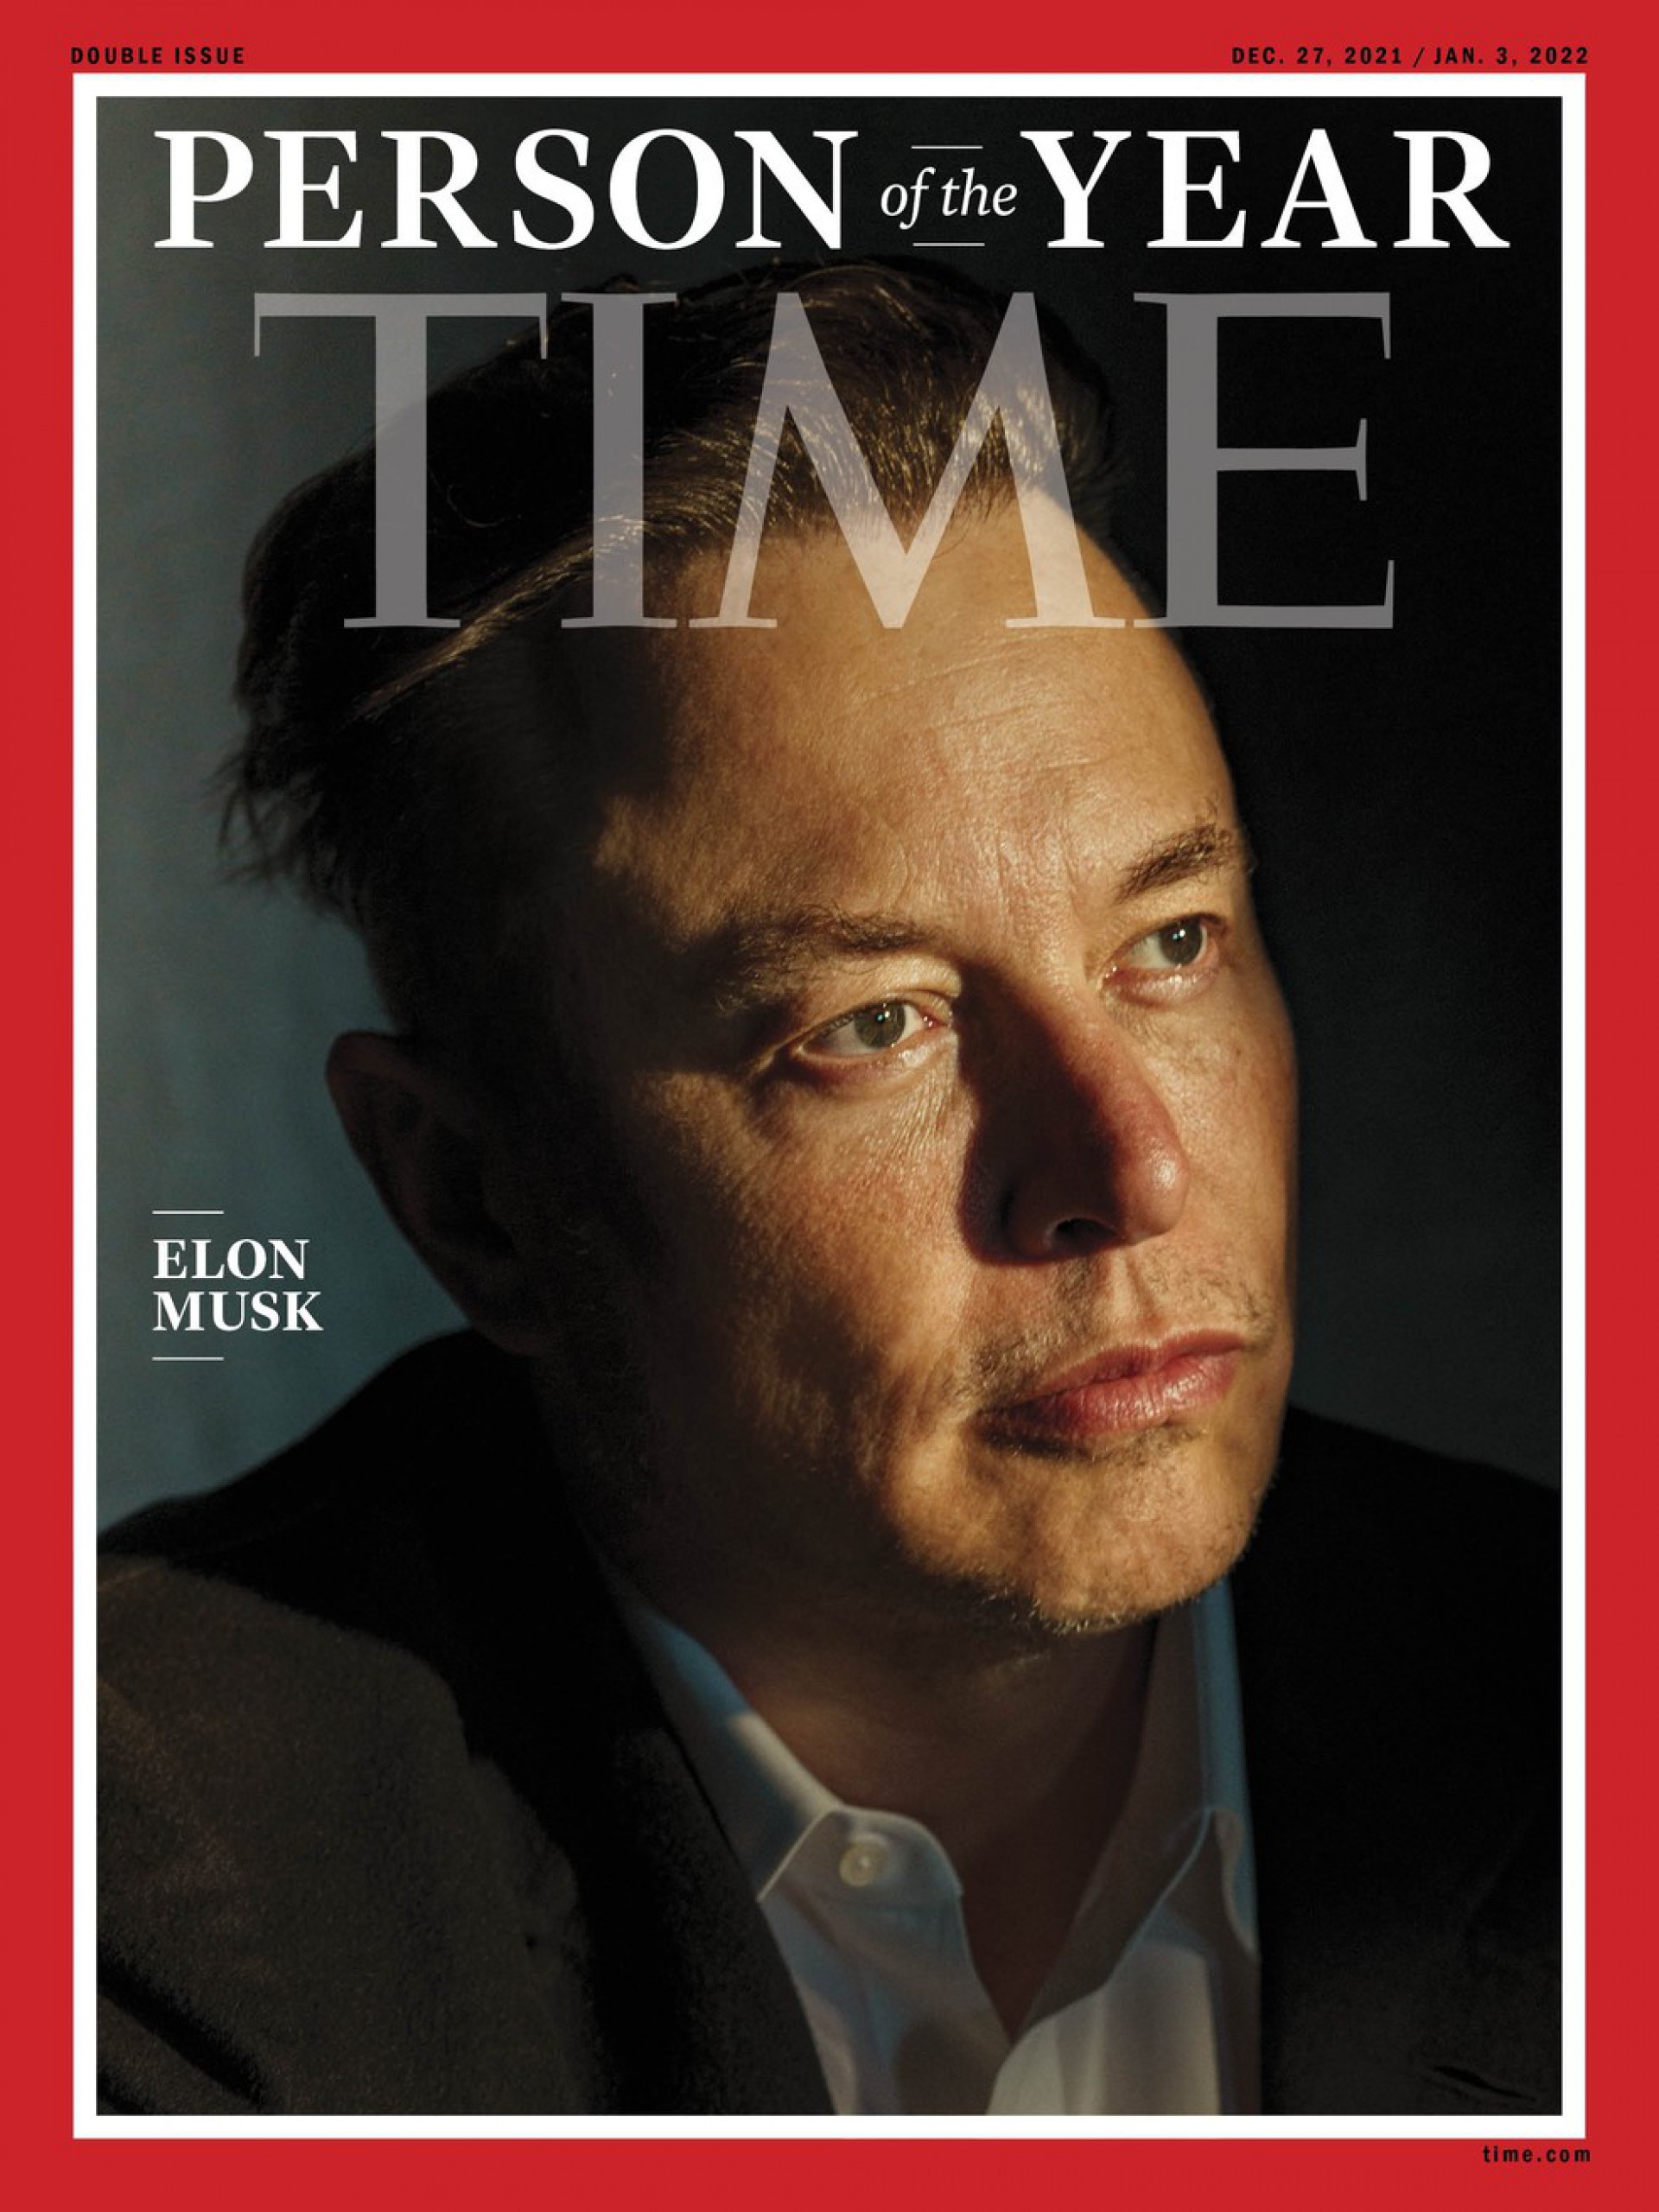 Em derrota para Bolsonaro, Elon Musk é escolhido personalidade do ano pela Time